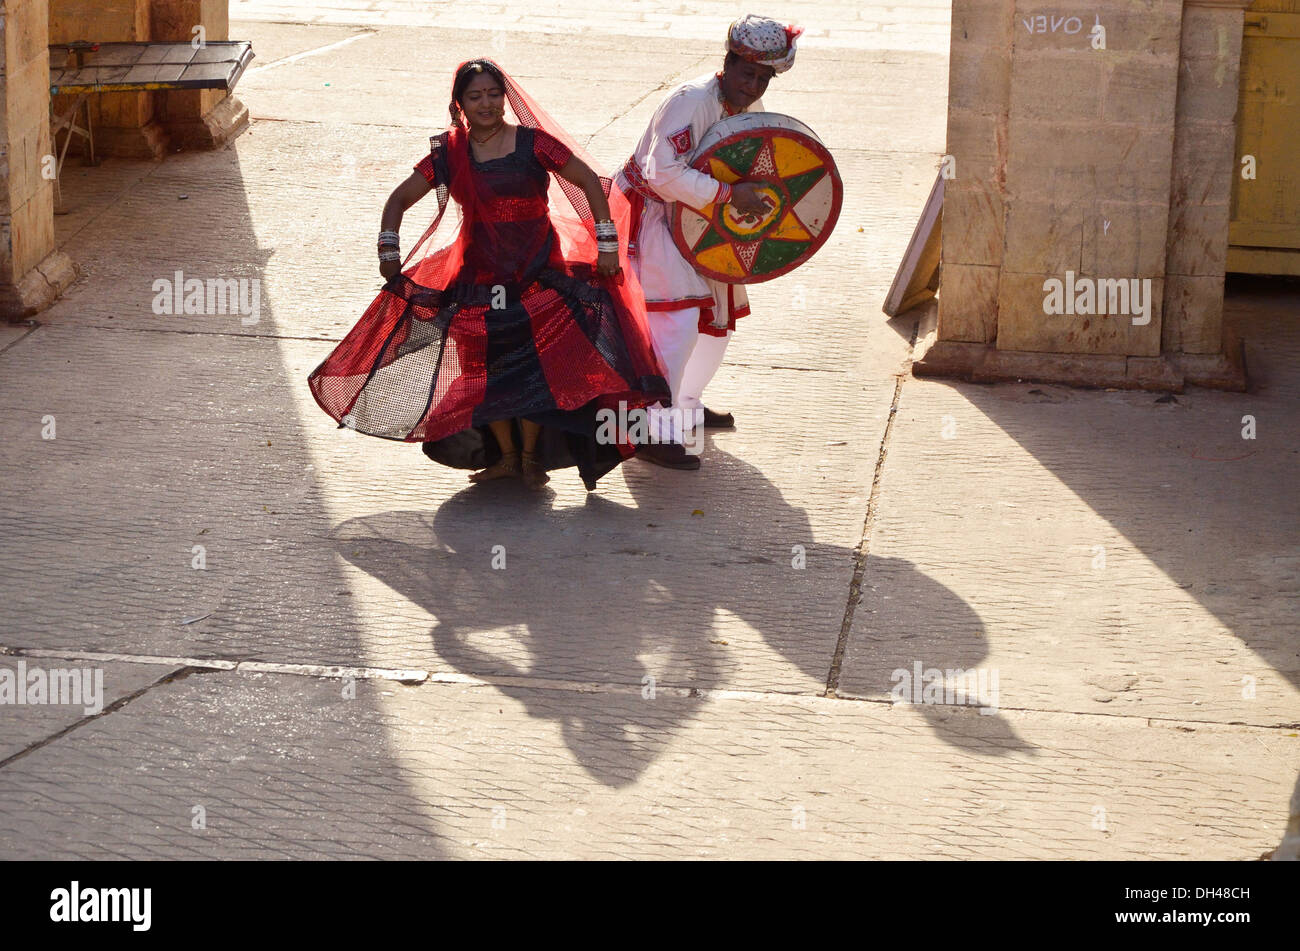 Chanteuse Folk avec femme effectue la danse du Rajasthan Inde Asie M.# 704I M.# 704J Banque D'Images